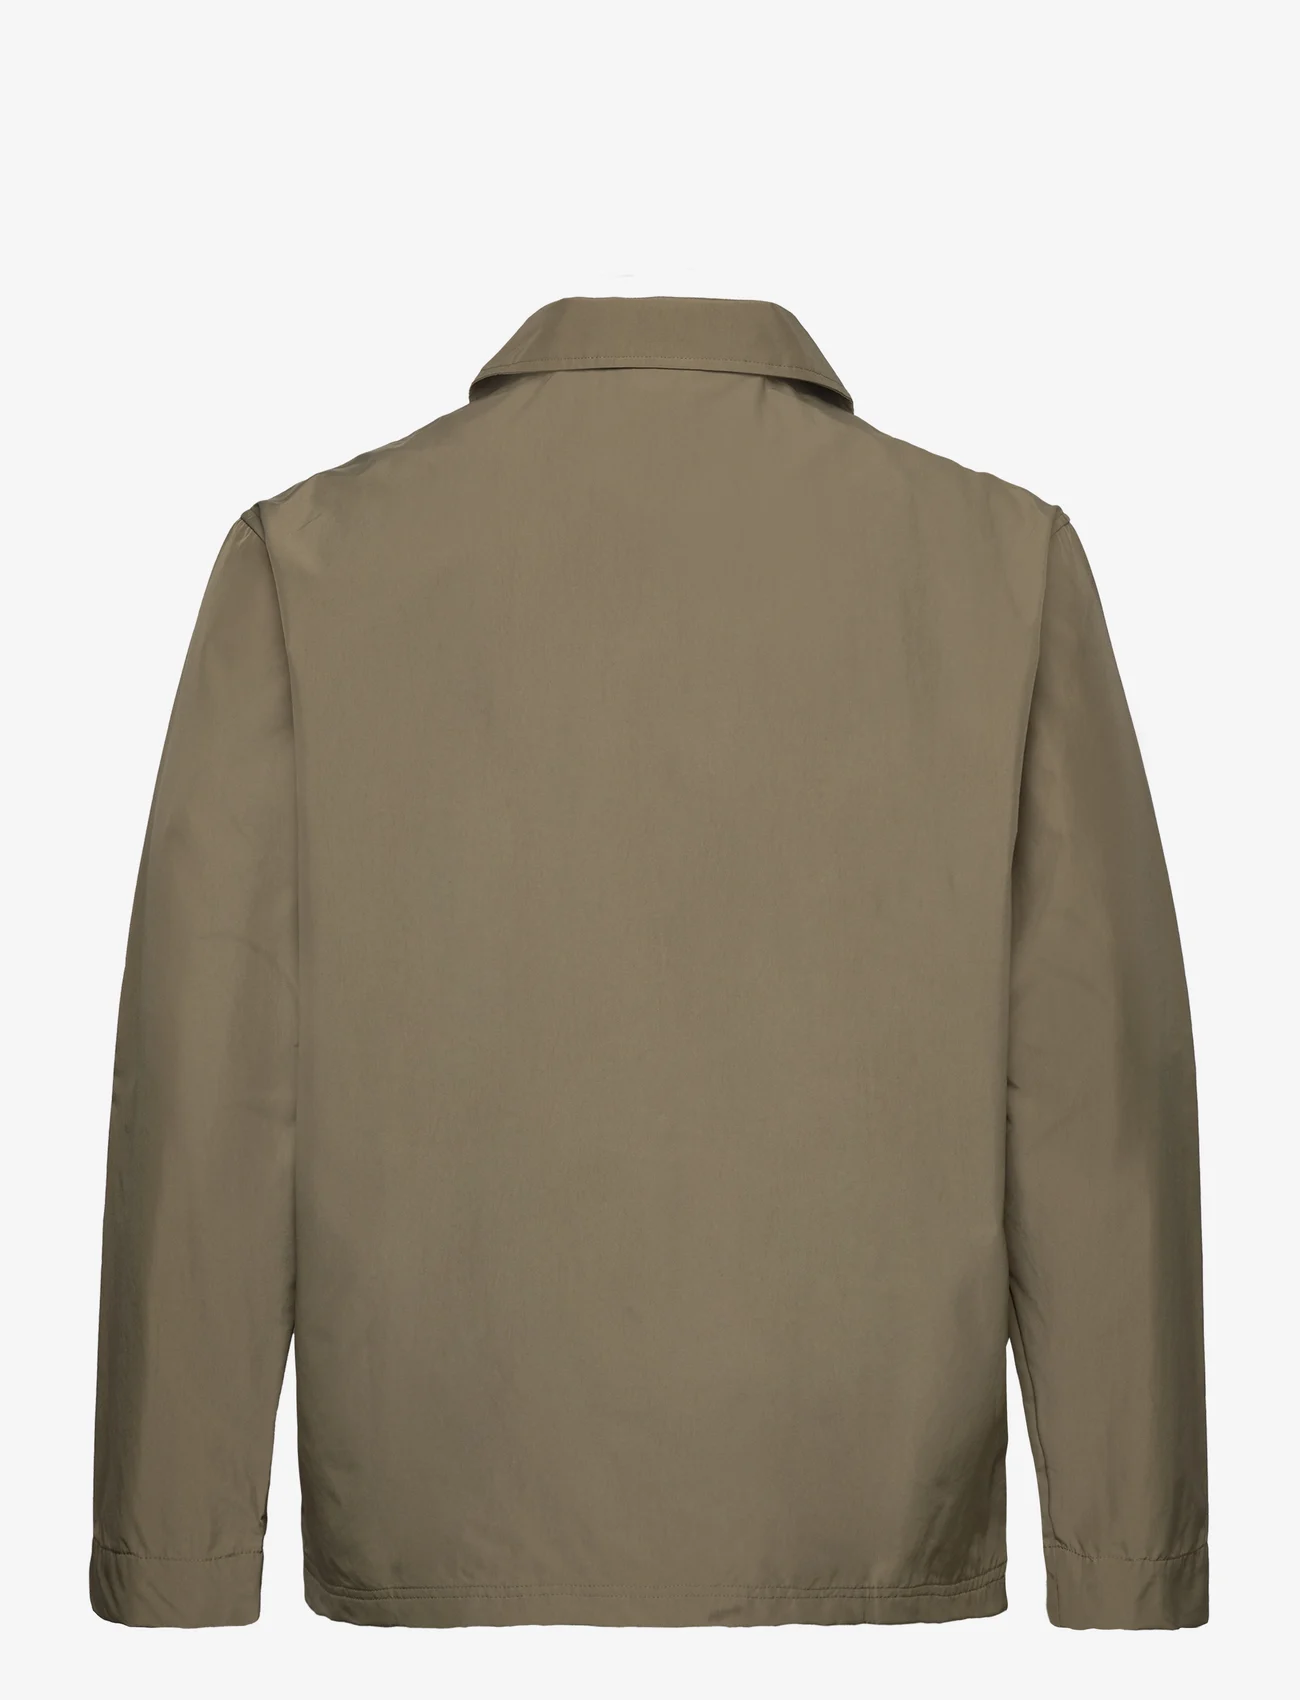 New Balance Essentials Reimagined Woven Jacket (Covert Green), (64.13 ...